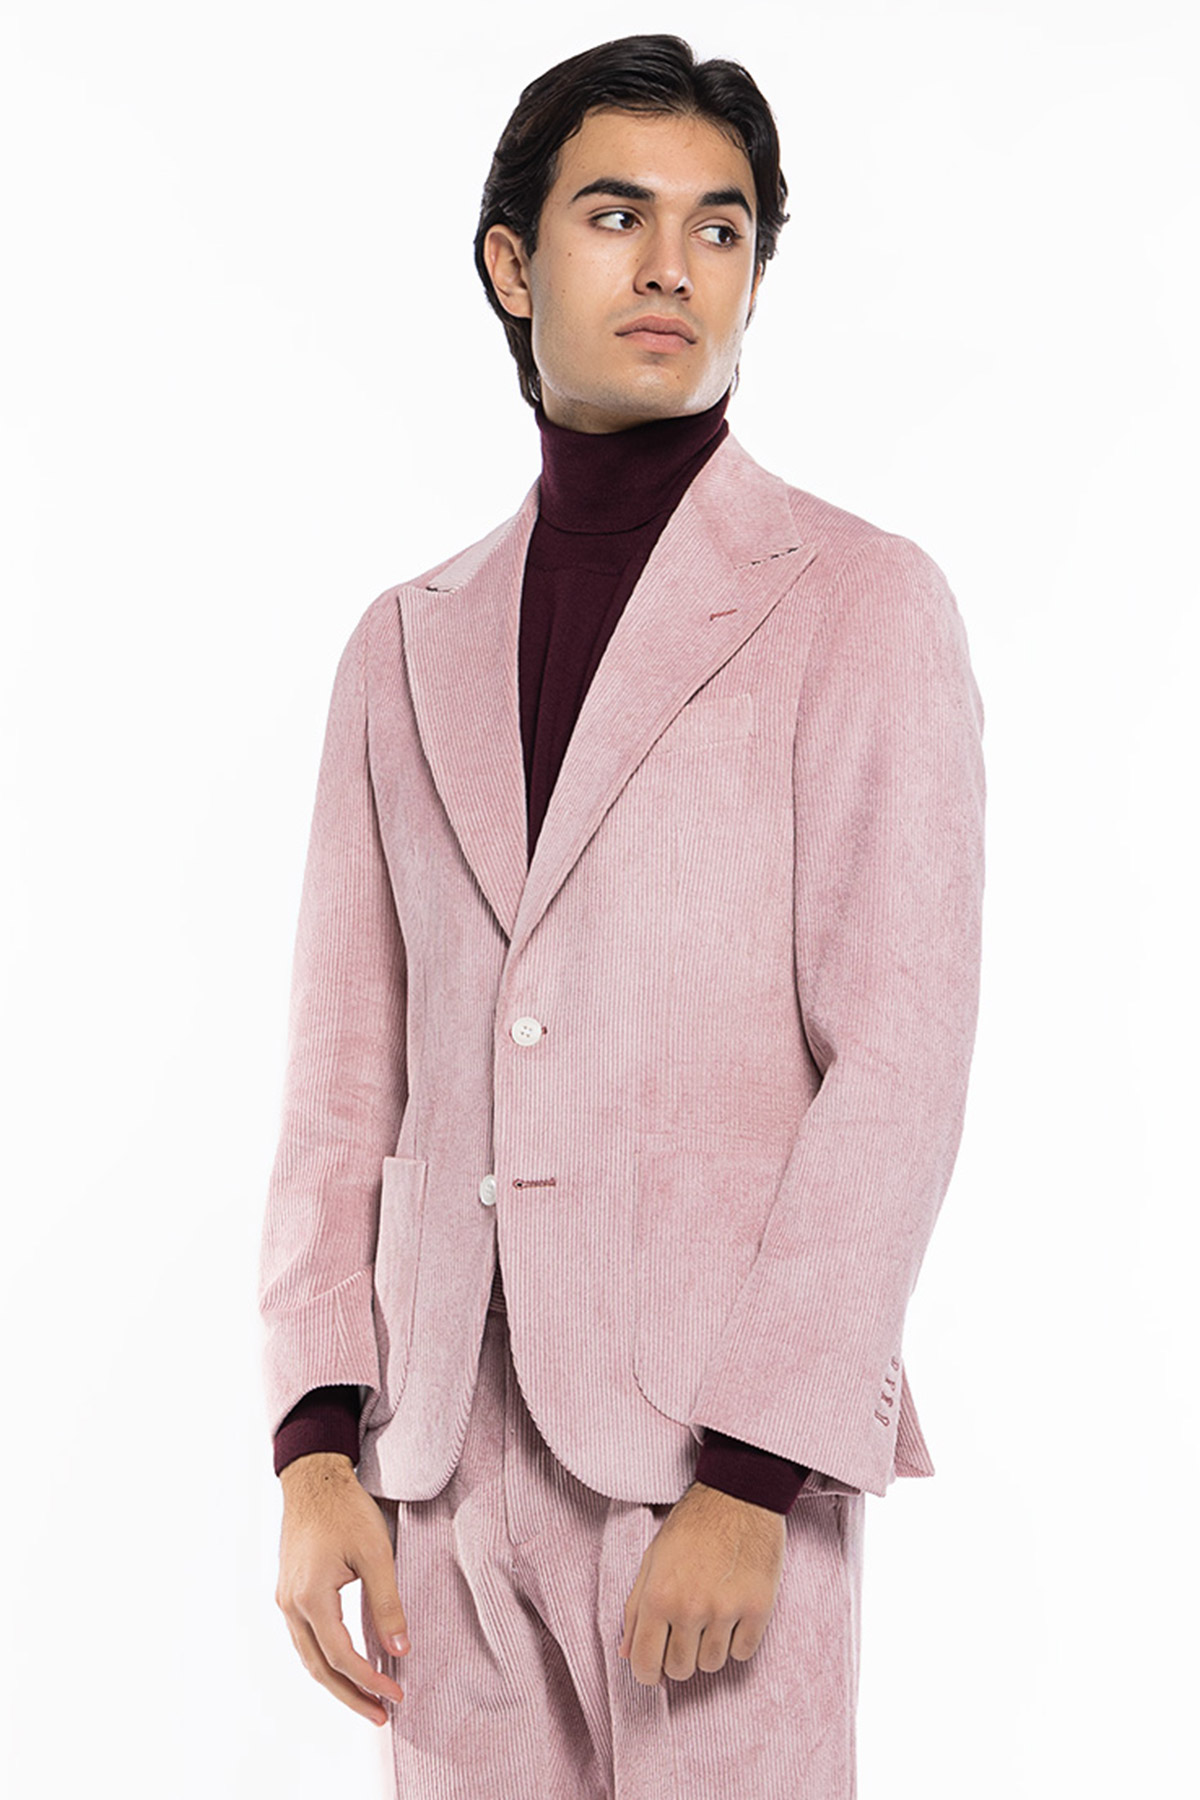 Abito uomo rosa con giacca monopetto in velluto a costine strette e pantalone vita alta cinturino biforcato